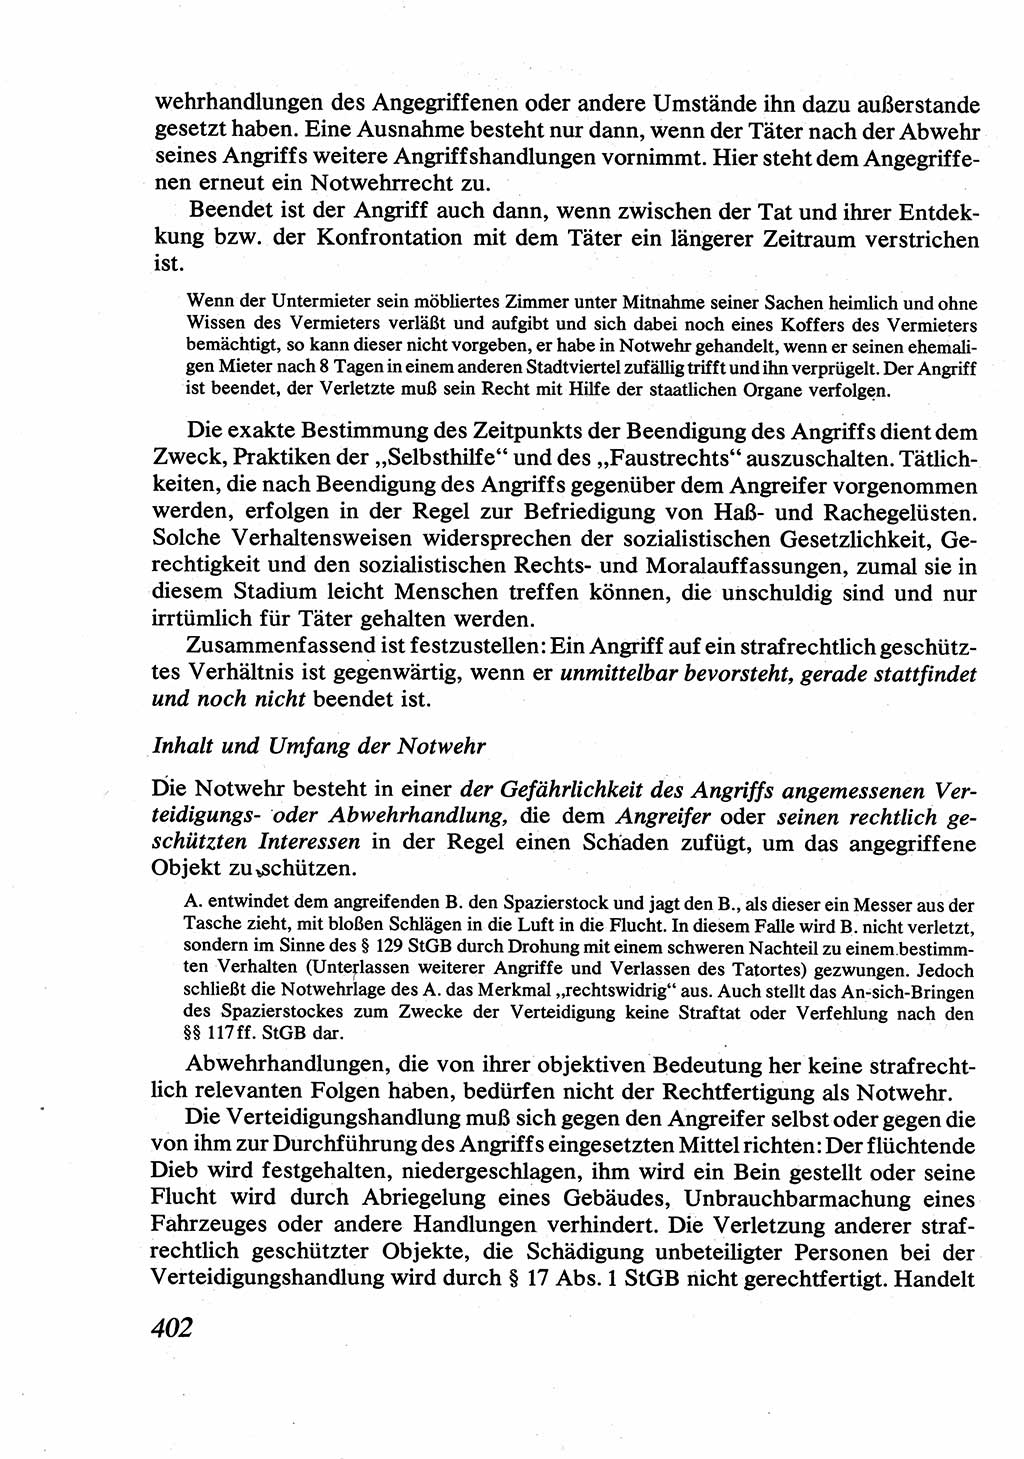 Strafrecht [Deutsche Demokratische Republik (DDR)], Allgemeiner Teil, Lehrbuch 1976, Seite 402 (Strafr. DDR AT Lb. 1976, S. 402)